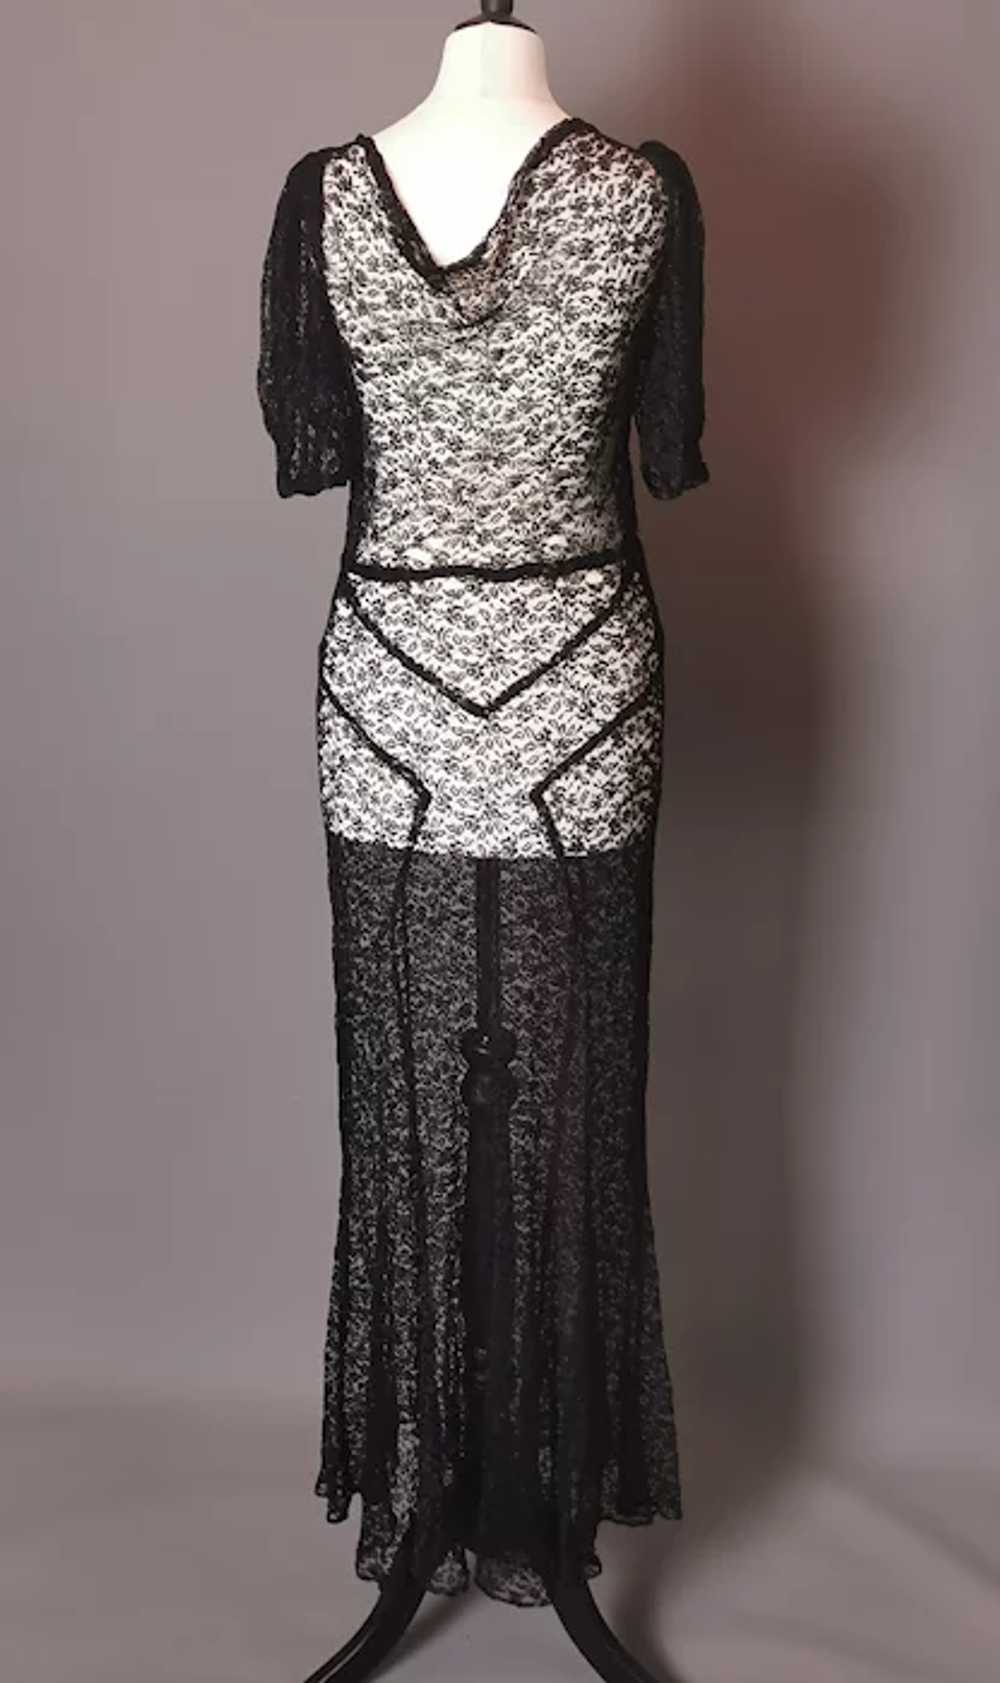 Vintage 1930's Black lace dress, bias cut gown, s… - image 7